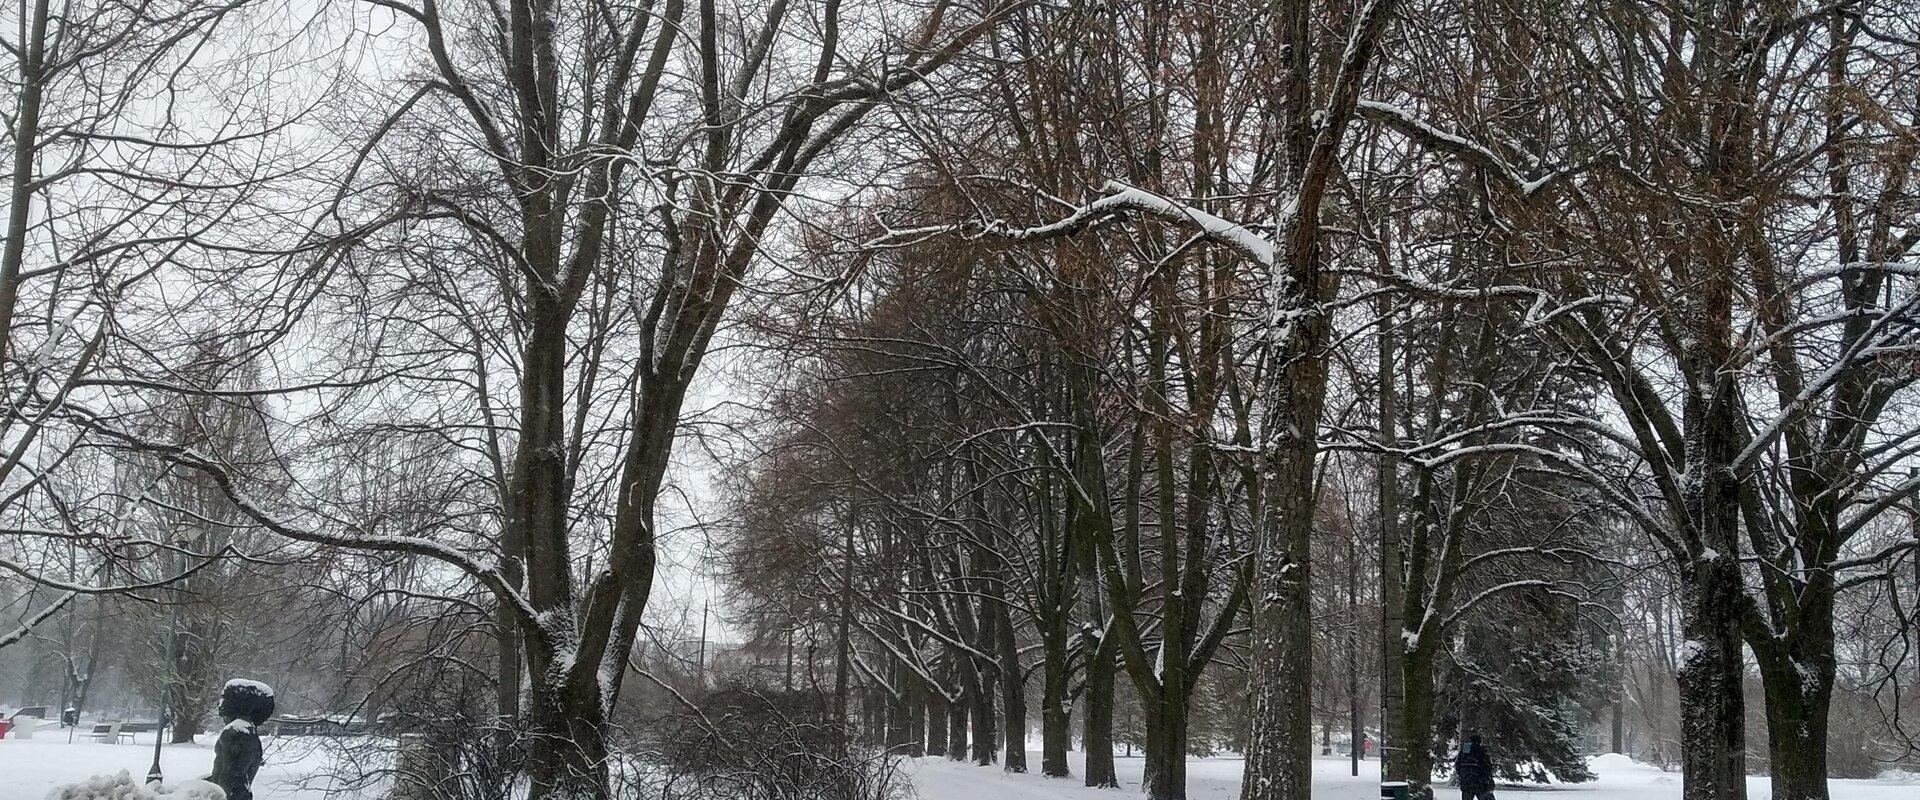 Talvevõlumaa - talvised Tartu pargid